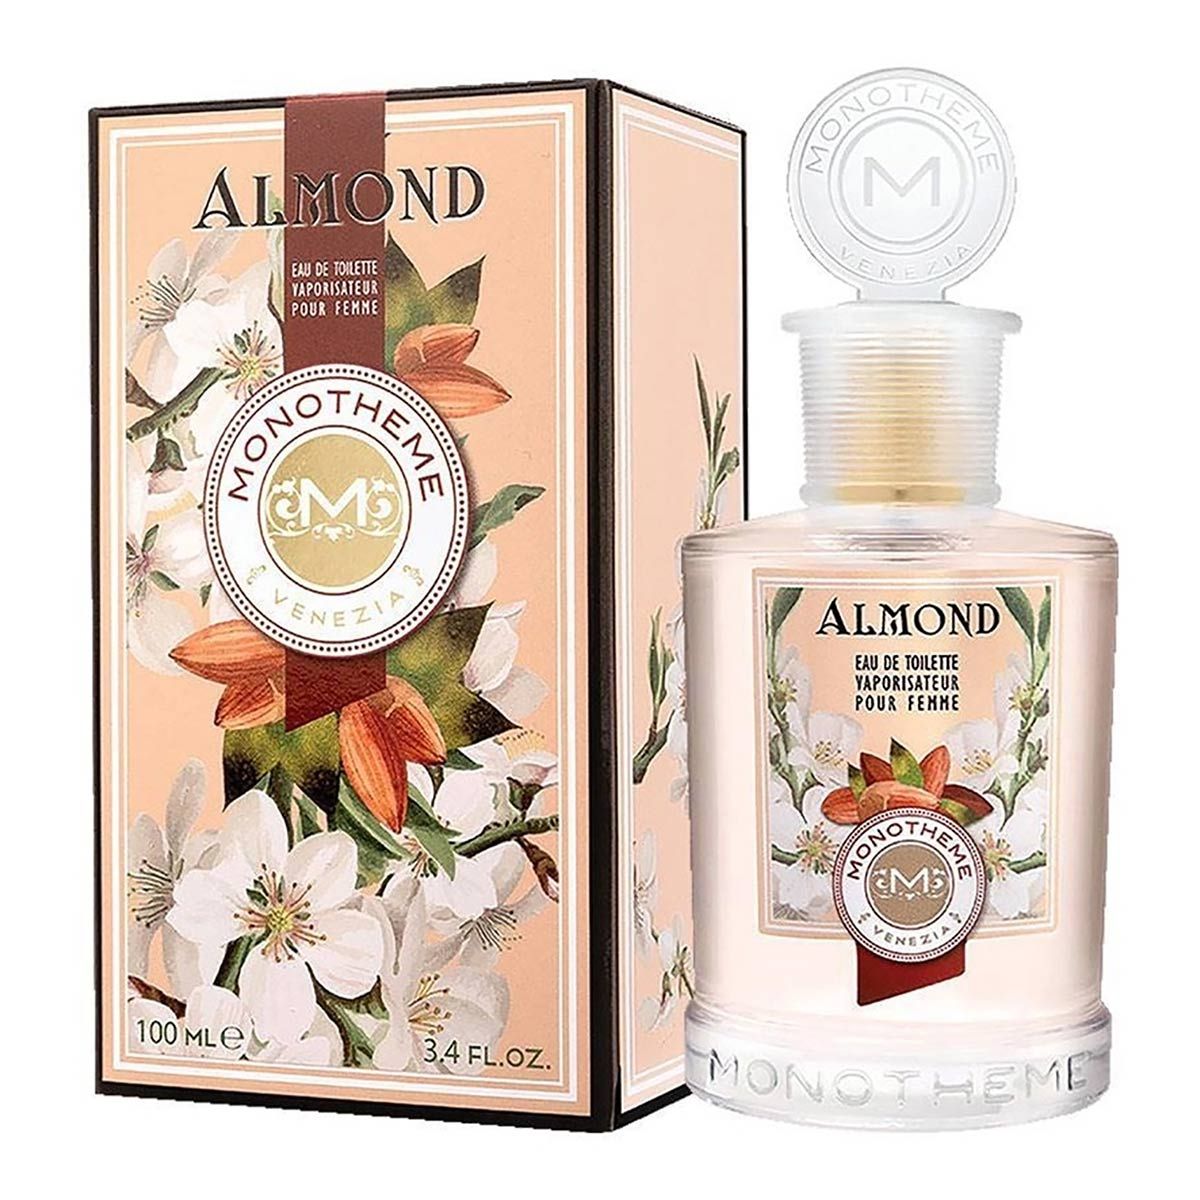 Monotheme Almond EDT